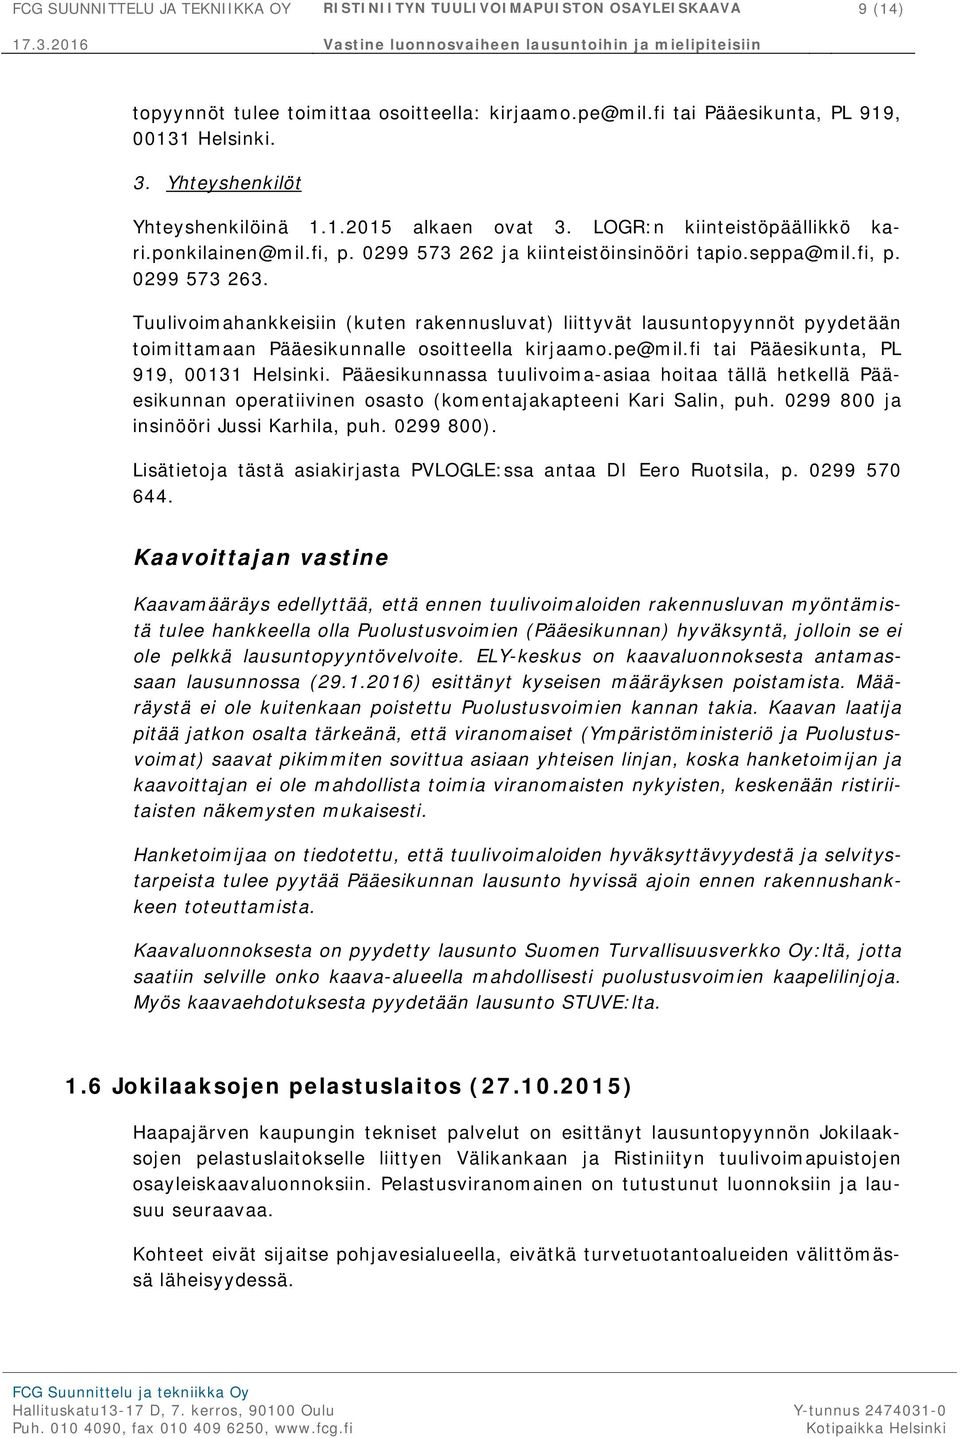 Tuulivoimahankkeisiin (kuten rakennusluvat) liittyvät lausuntopyynnöt pyydetään toimittamaan Pääesikunnalle osoitteella kirjaamo.pe@mil.fi tai Pääesikunta, PL 919, 00131 Helsinki.